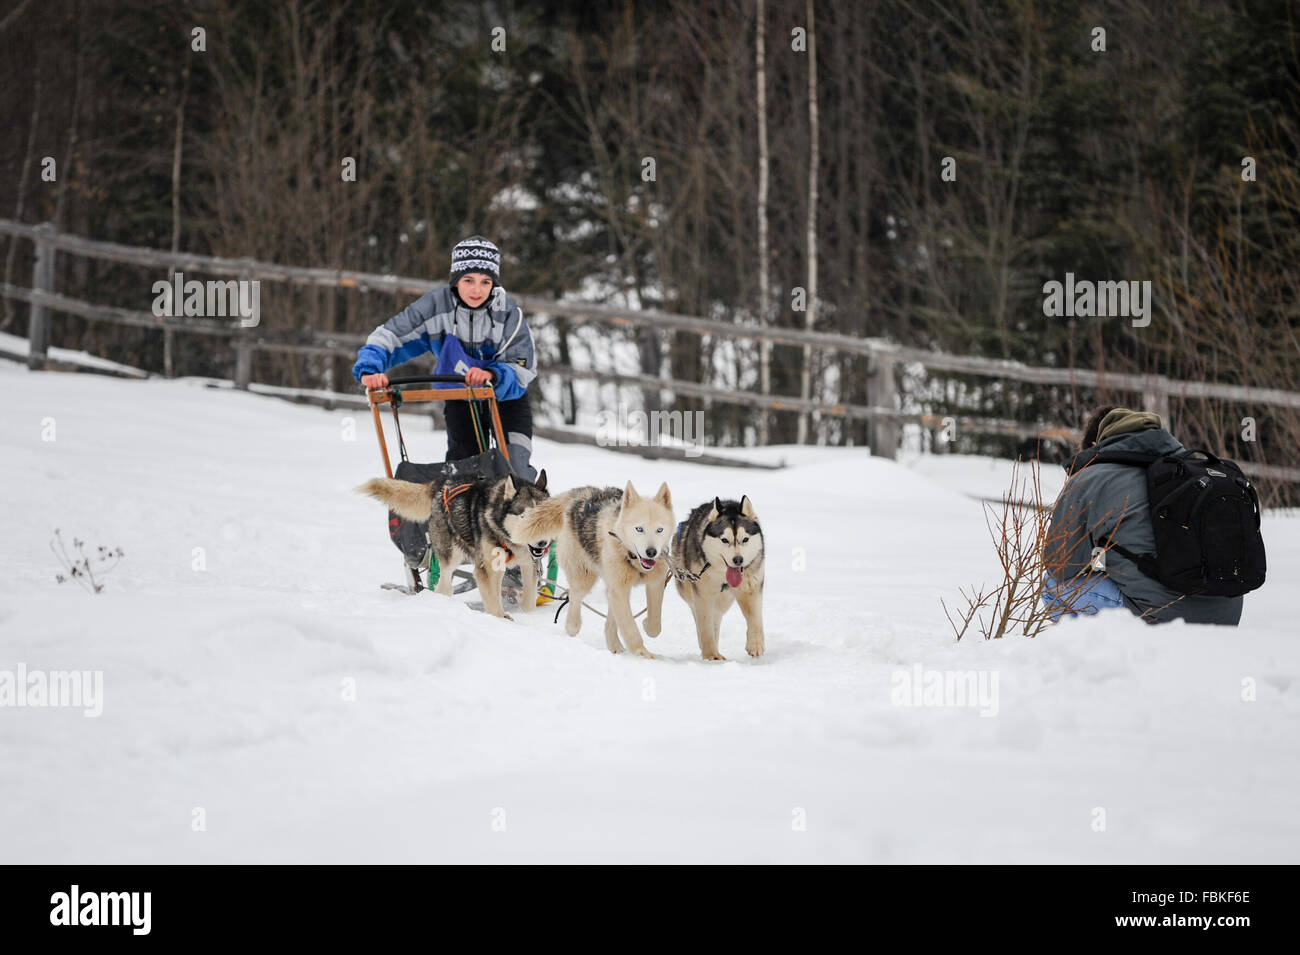 Les courses de chiens de traîneau avec Siberian Huskies, malamutes, samoyèdes, chiens nordiques. Photo prise en Transylvanie, Roumanie. Banque D'Images